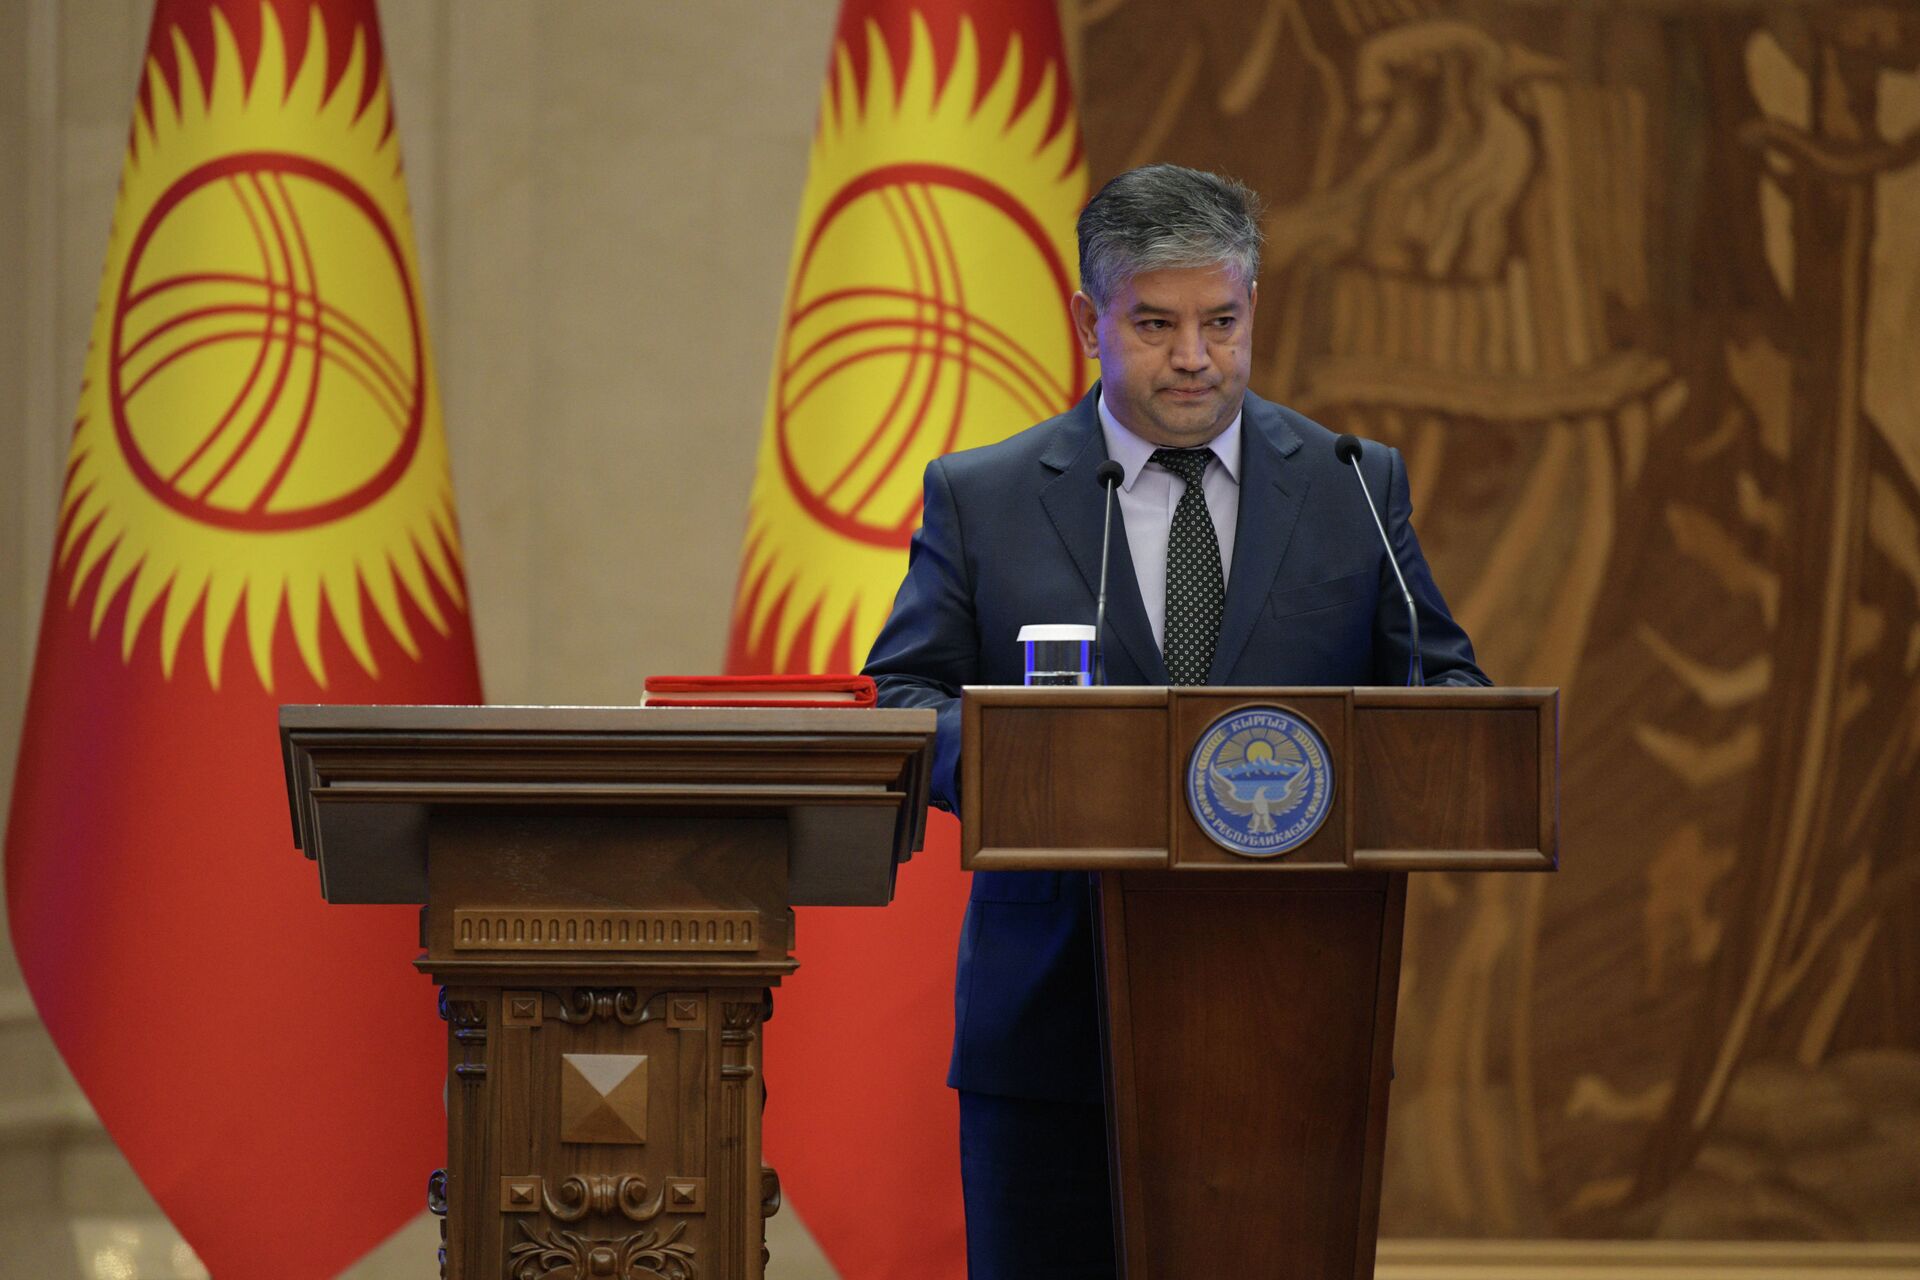 Принесение присяги членами правительства в госрезиденции Ала-Арча - Sputnik Кыргызстан, 1920, 16.12.2021